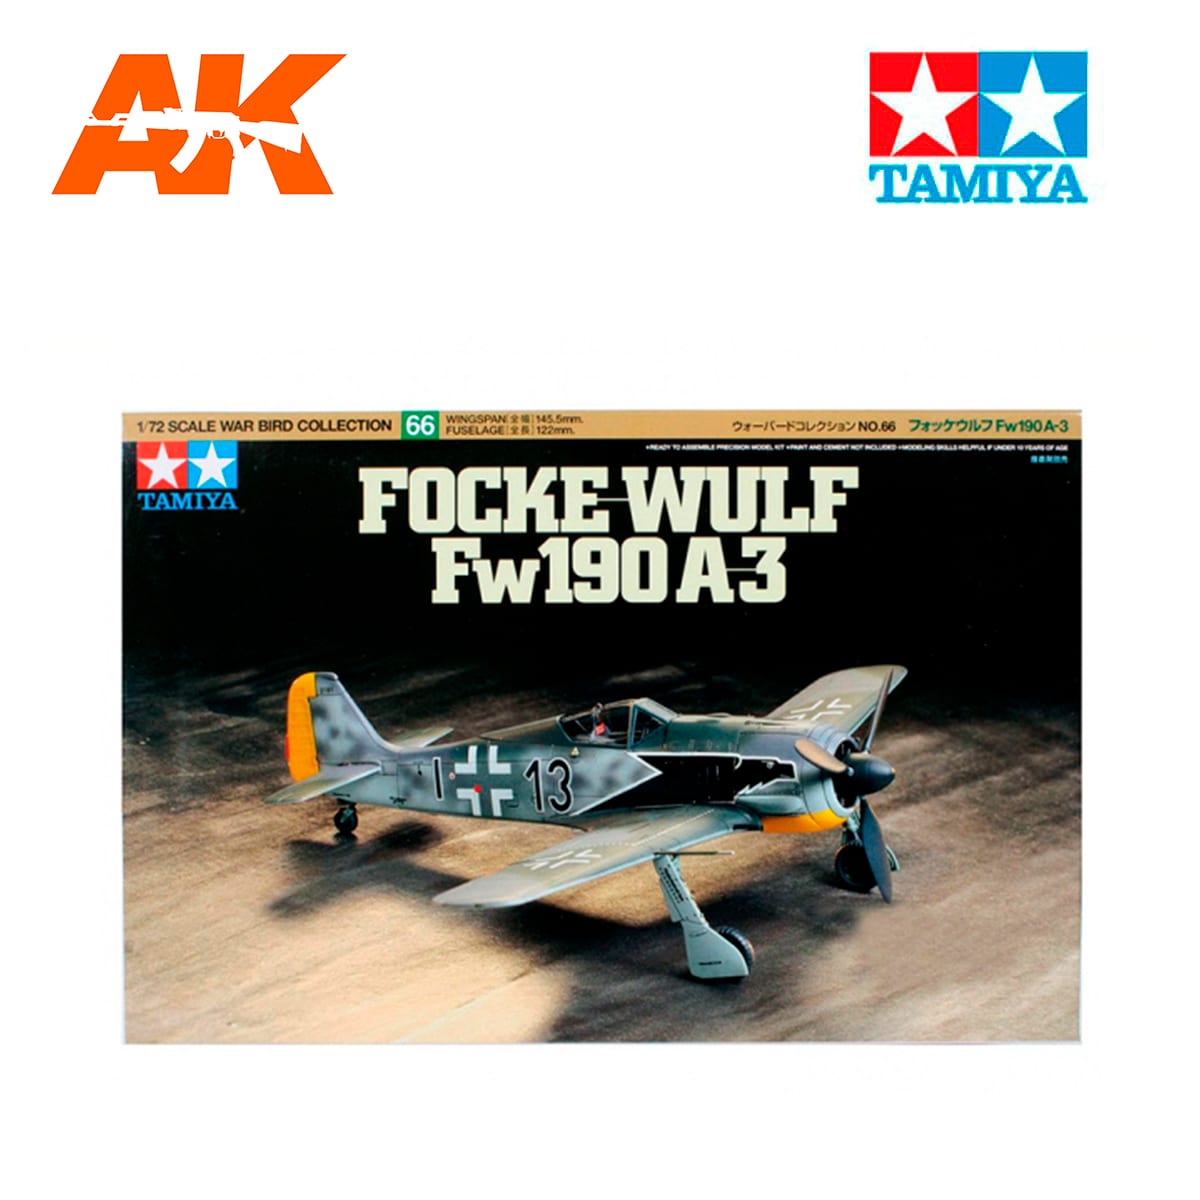 1/72 Focke-Wulf Fw190 A-3